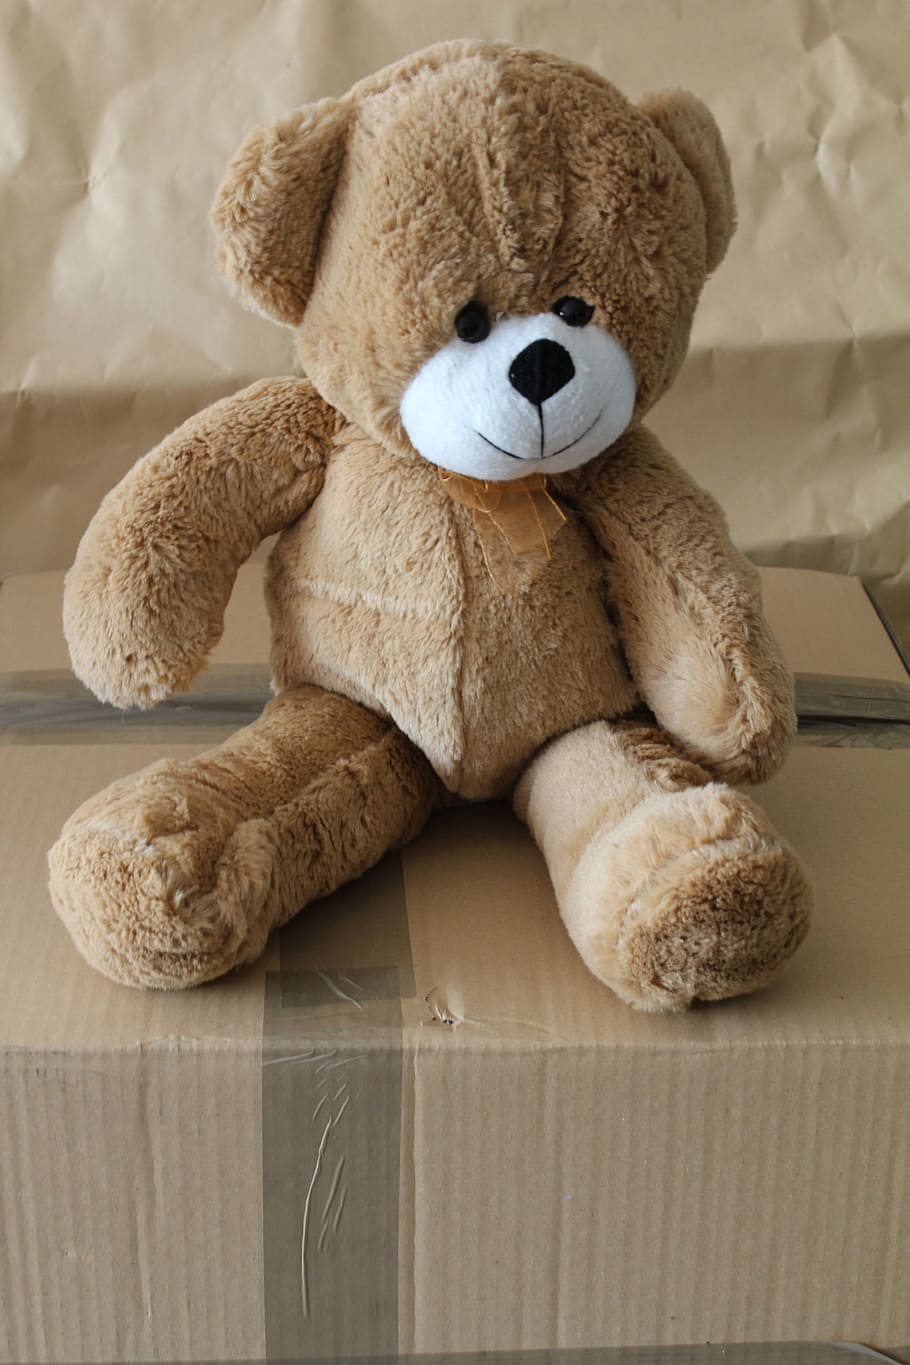 bear, teddy, soft toy, cute, fur, childhood, fluffy, stuffed, animal, cuddly